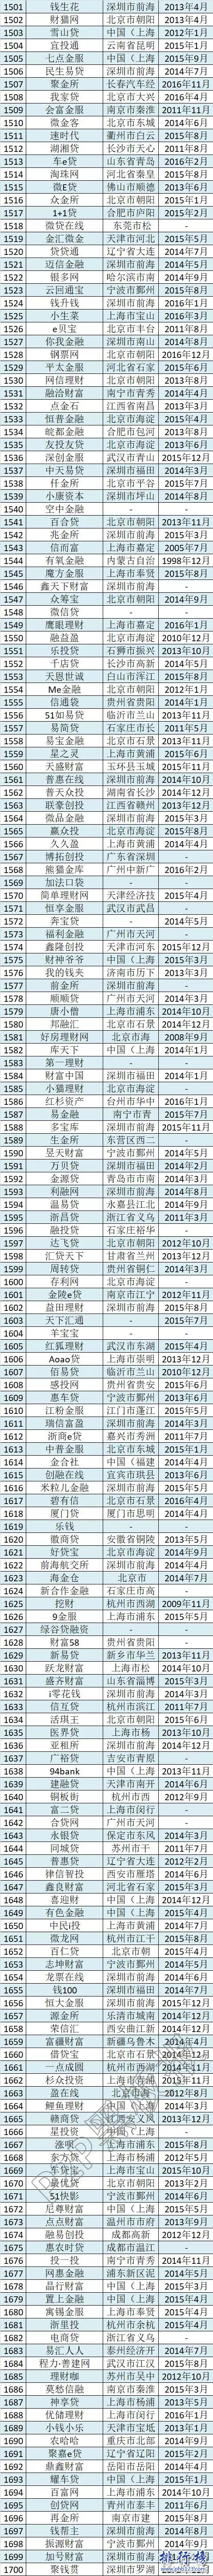 最全2017中國P2P網貸平台名單(1854家完整版)